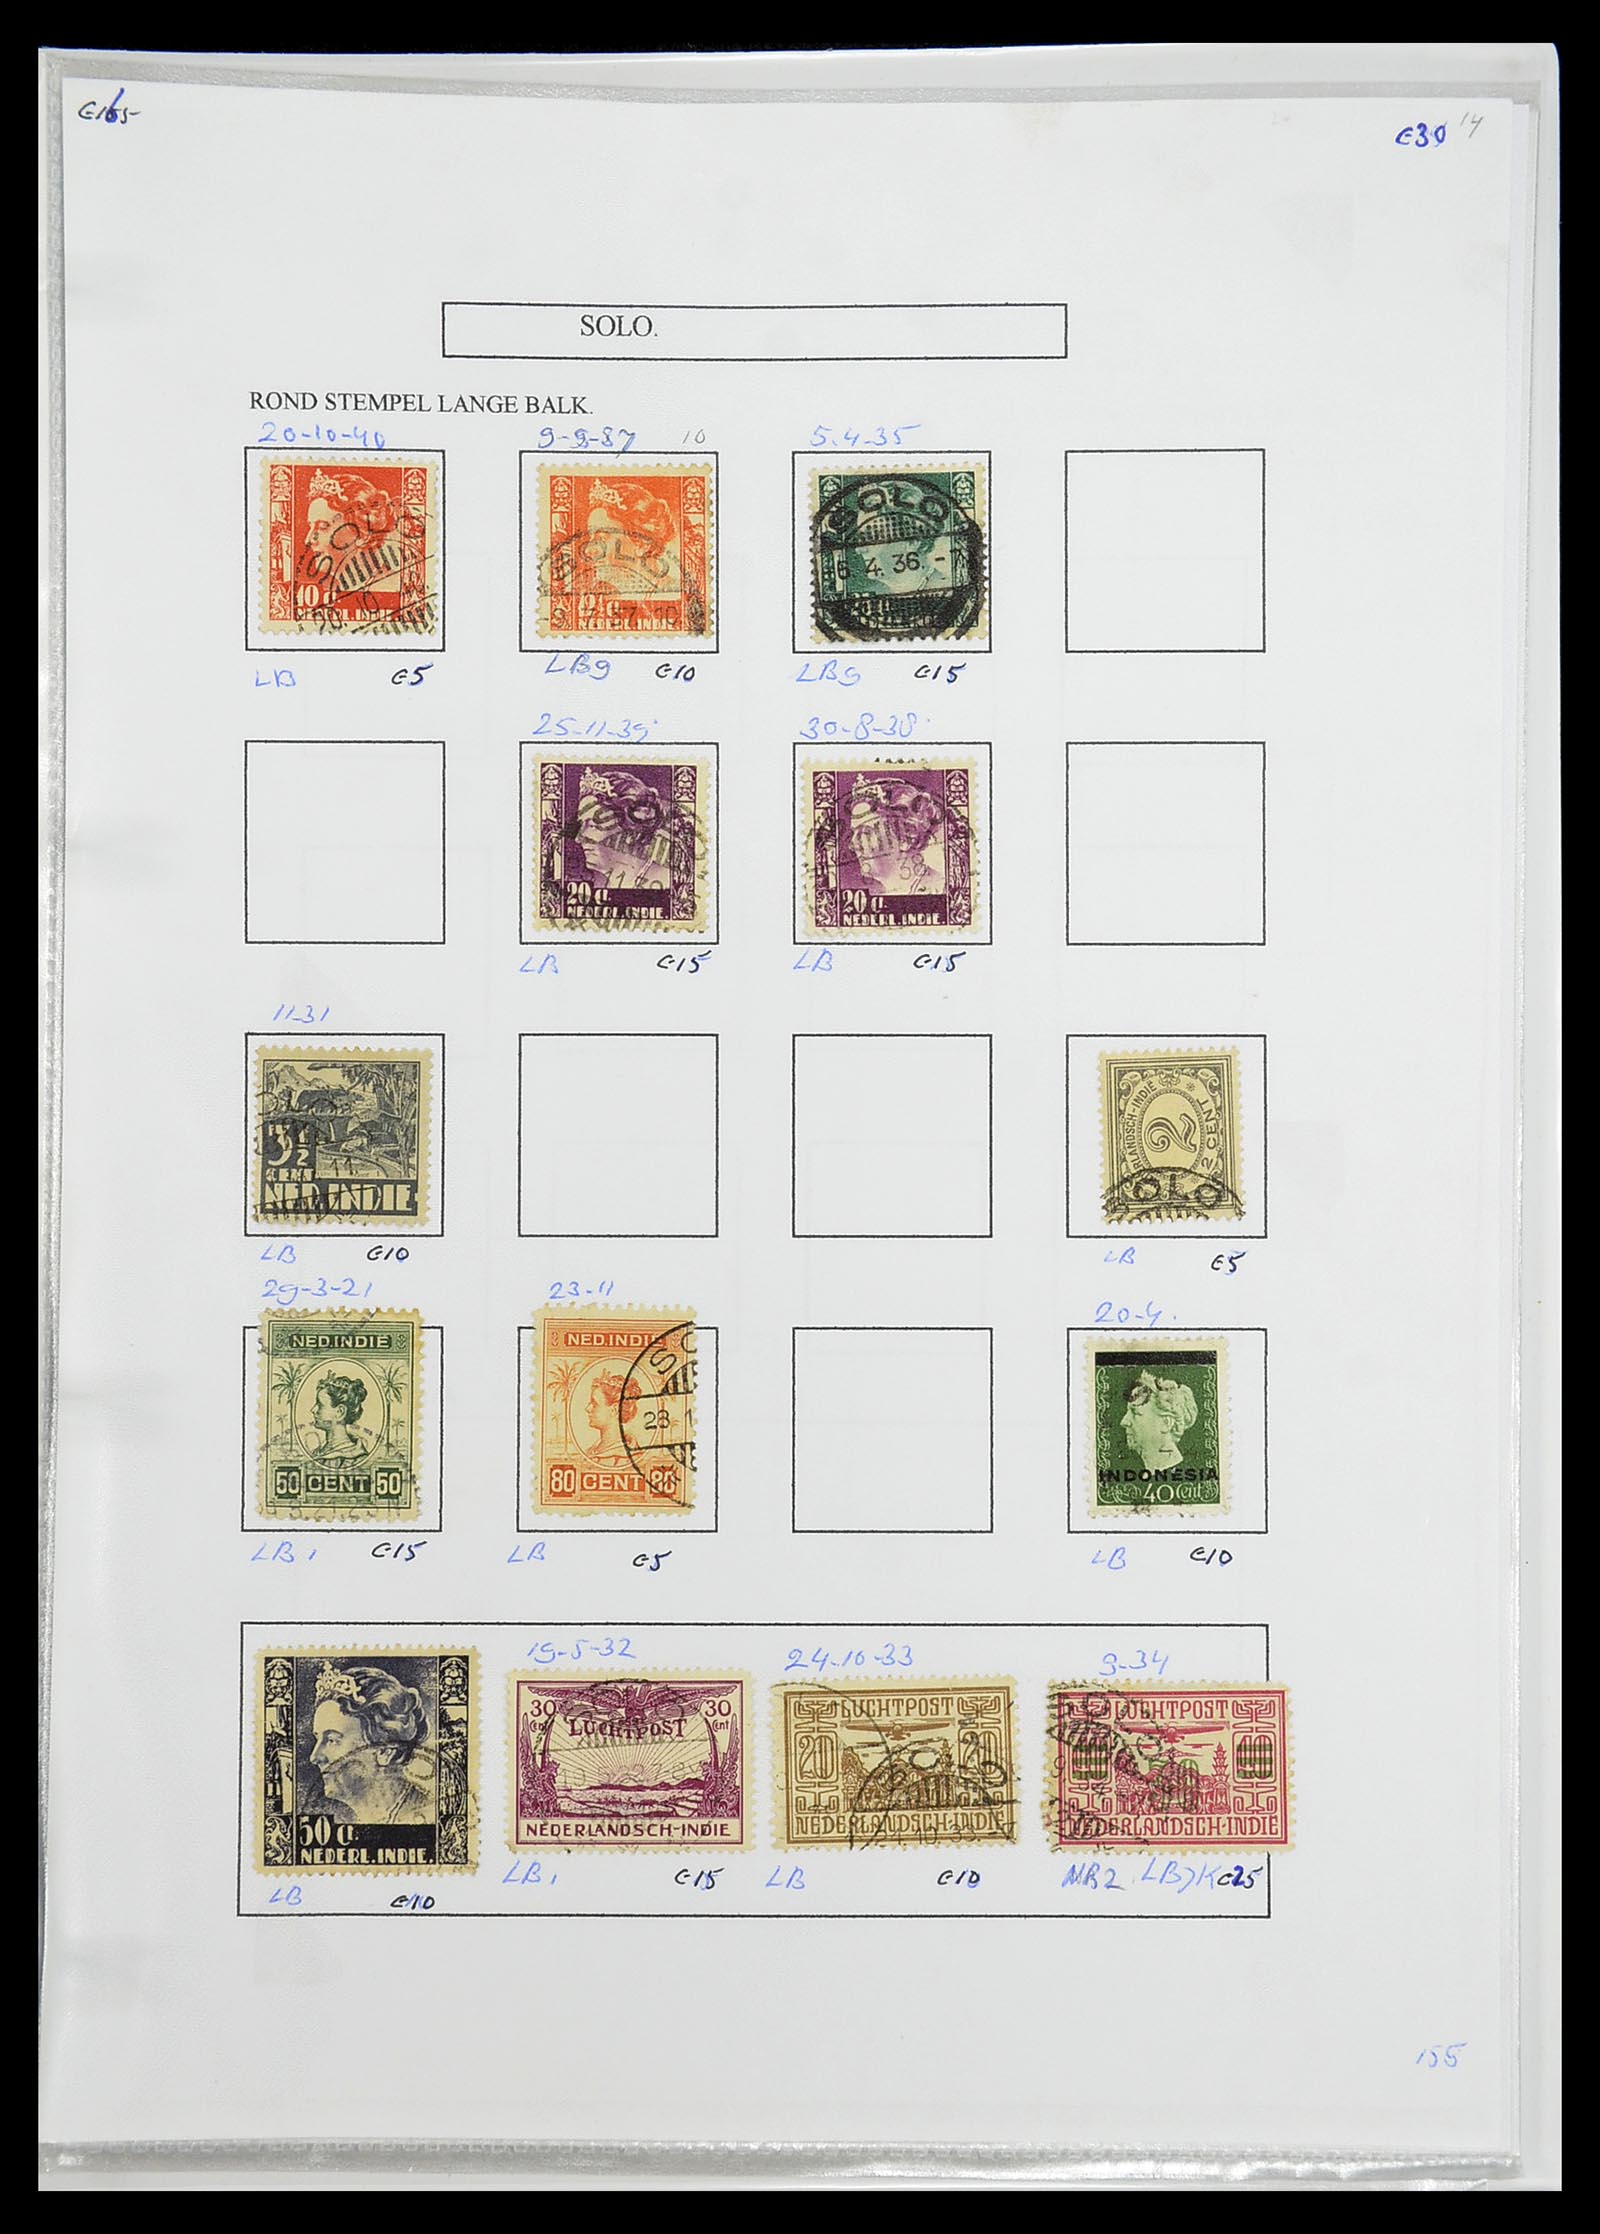 34693 396 - Postzegelverzameling 34693 Nederlands Indië stempels 1917-1948.